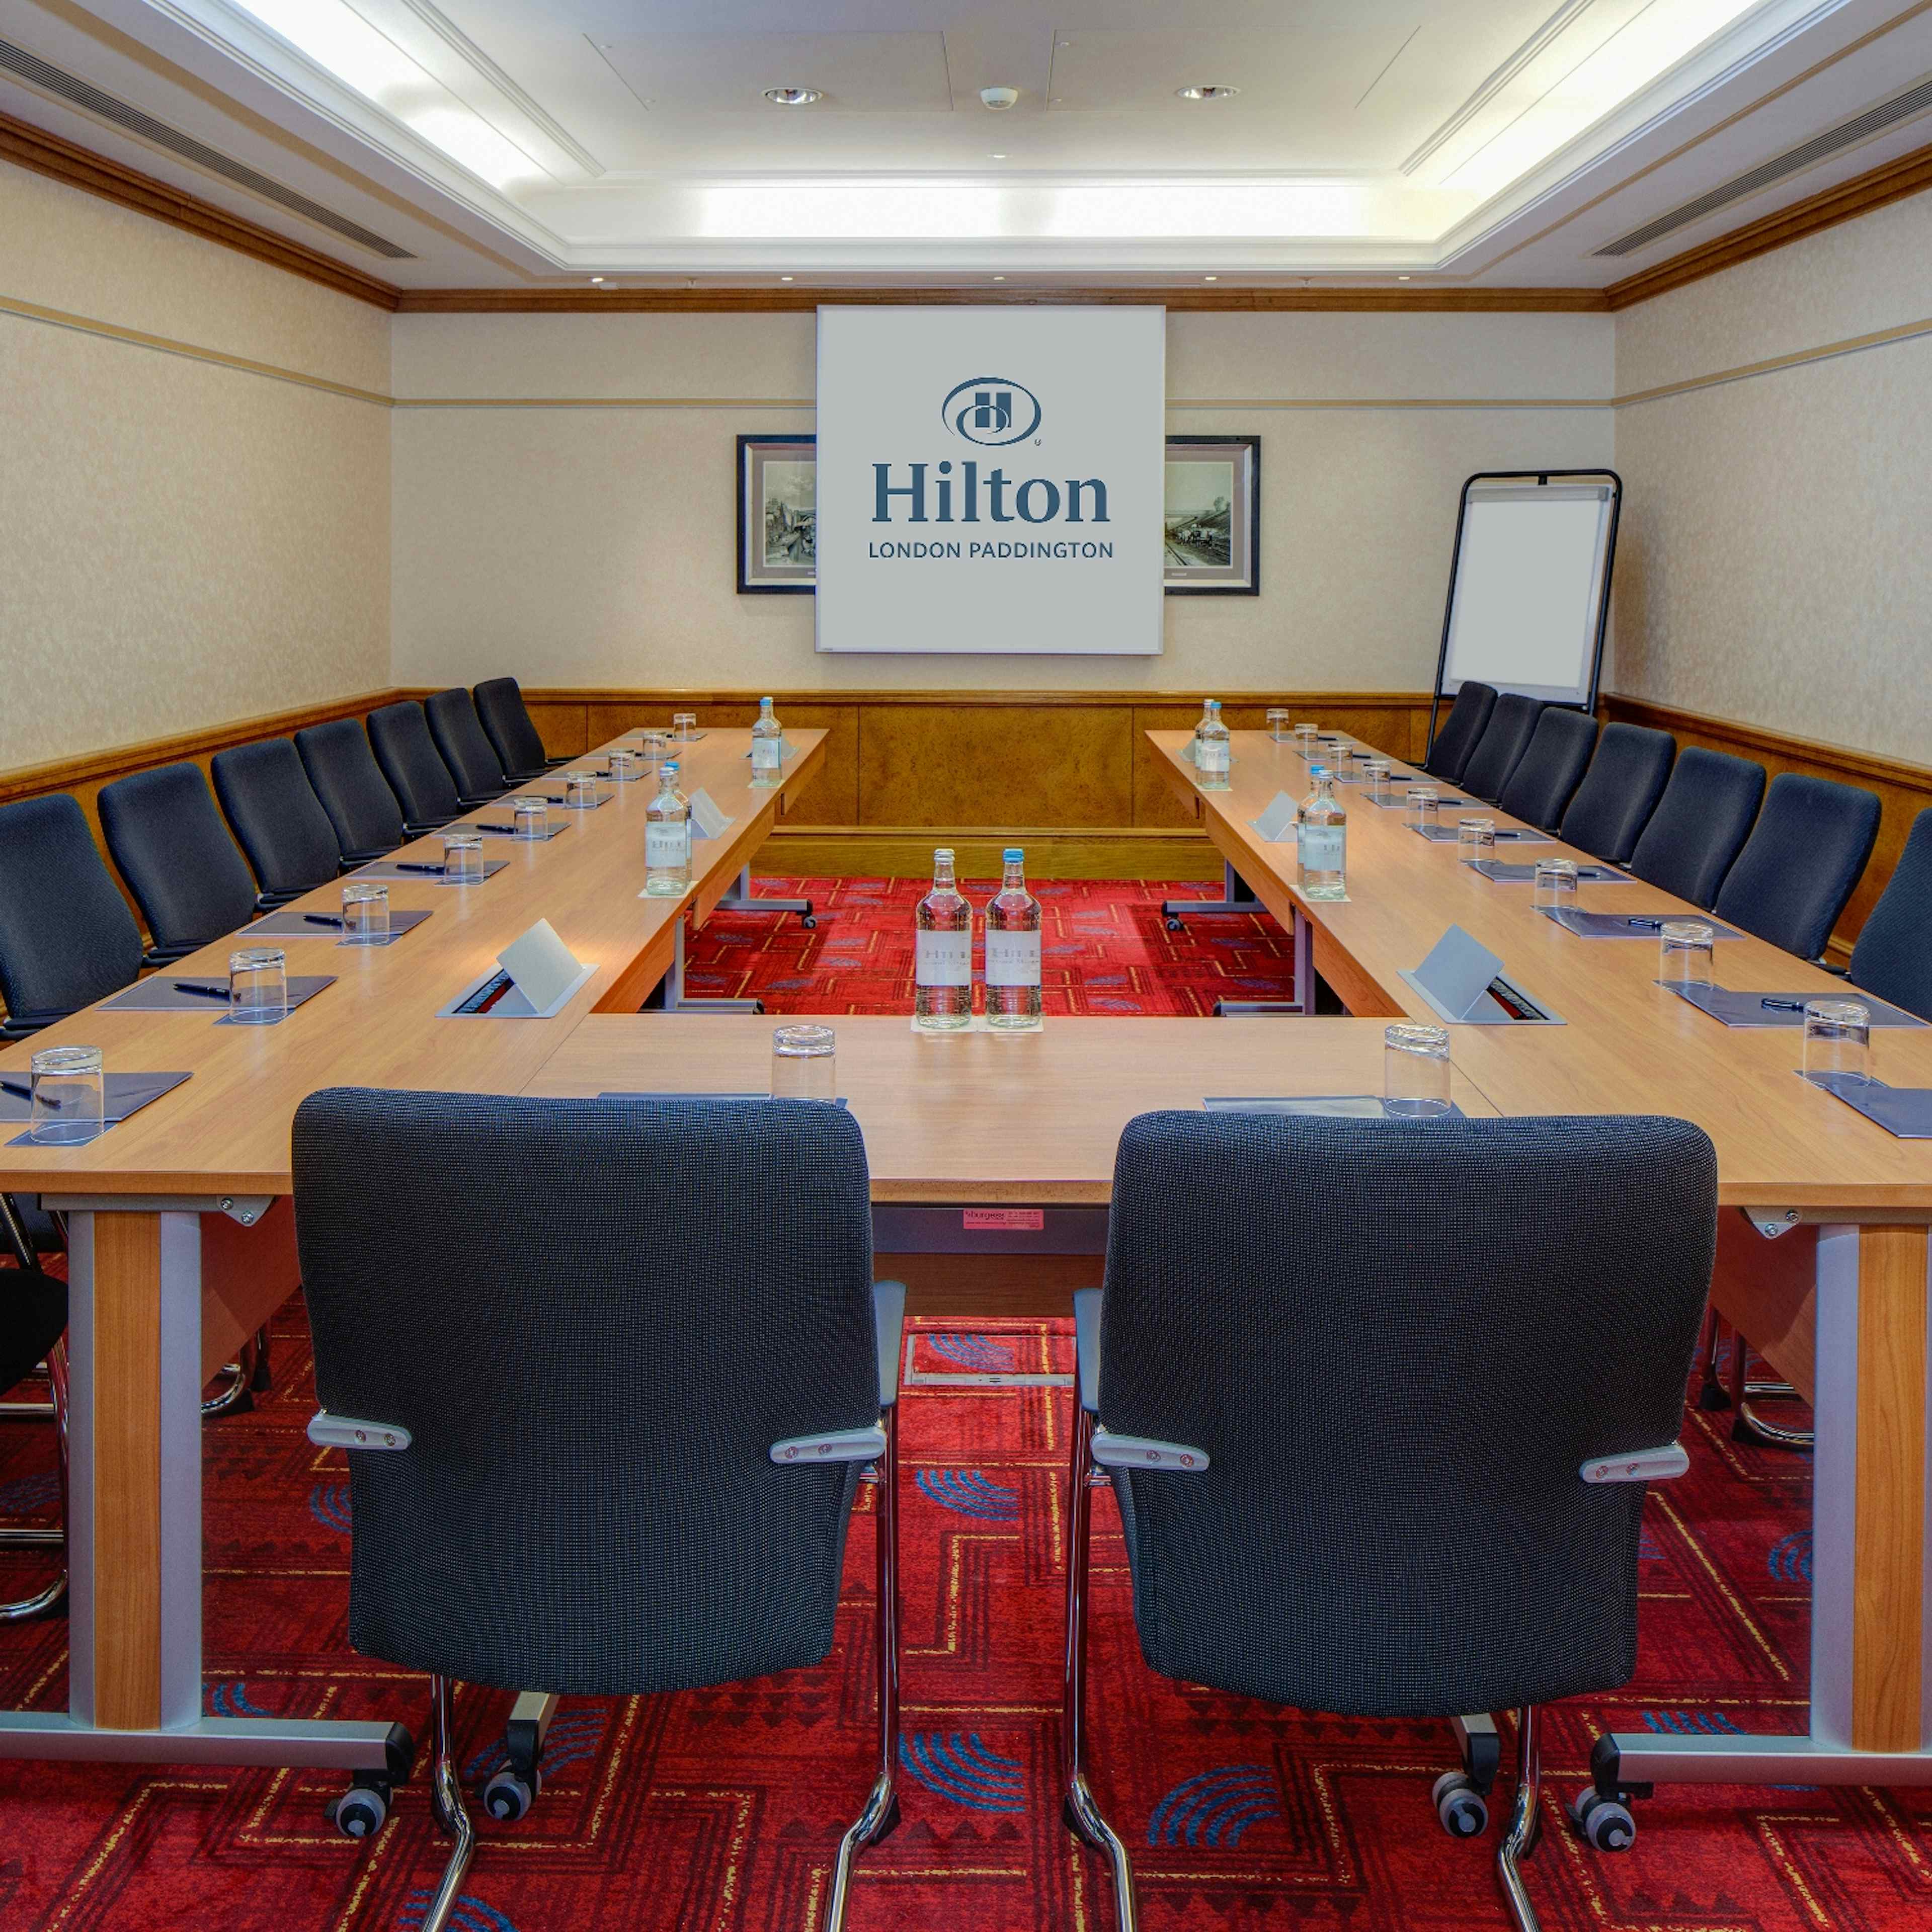 Hilton London Paddington - King George V image 3